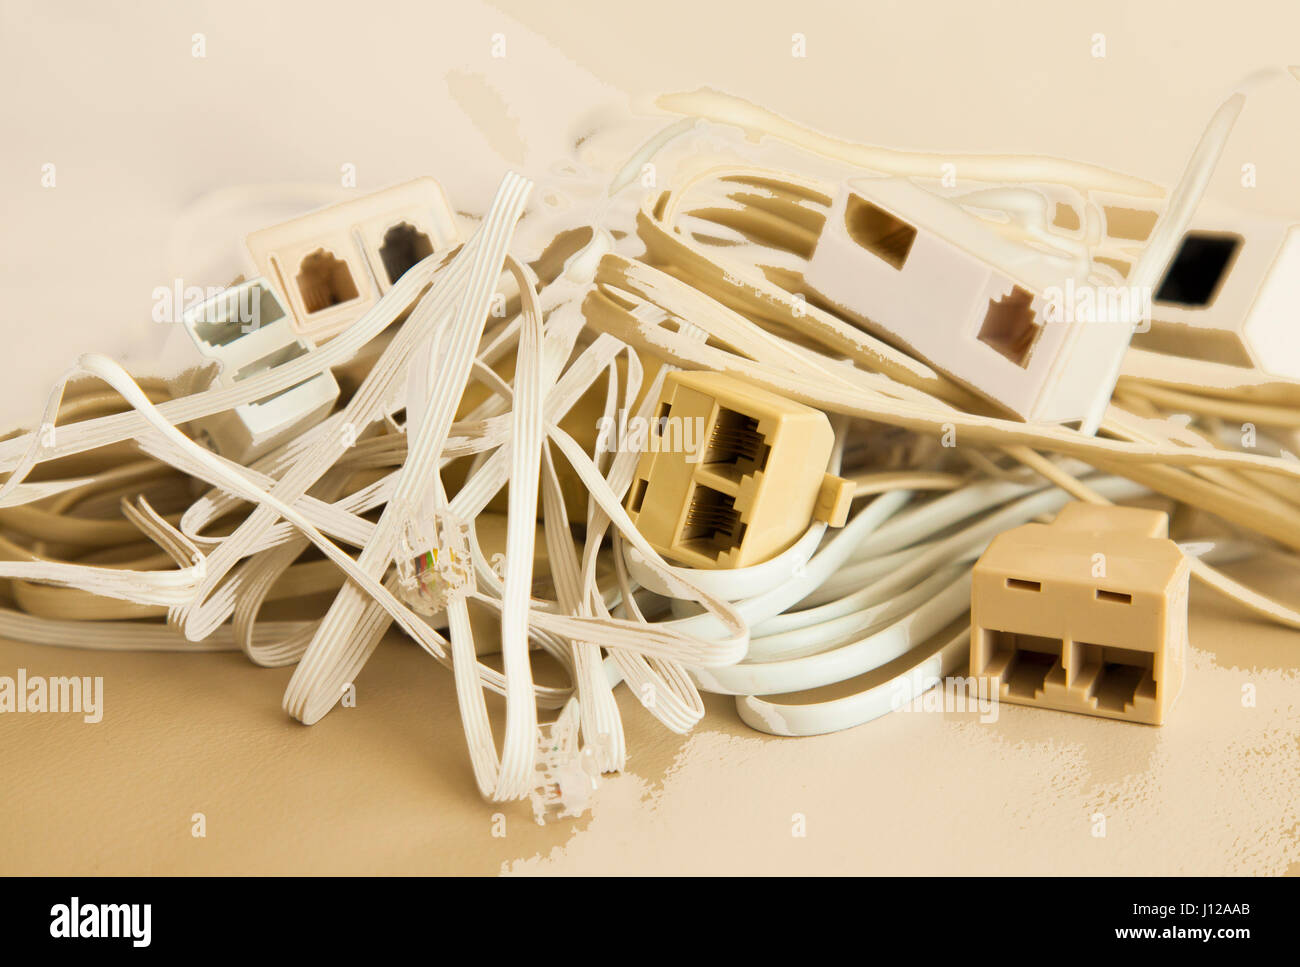 Lose Kabel in einem Stapel, Büro-Computer-Zubehör Stockfoto